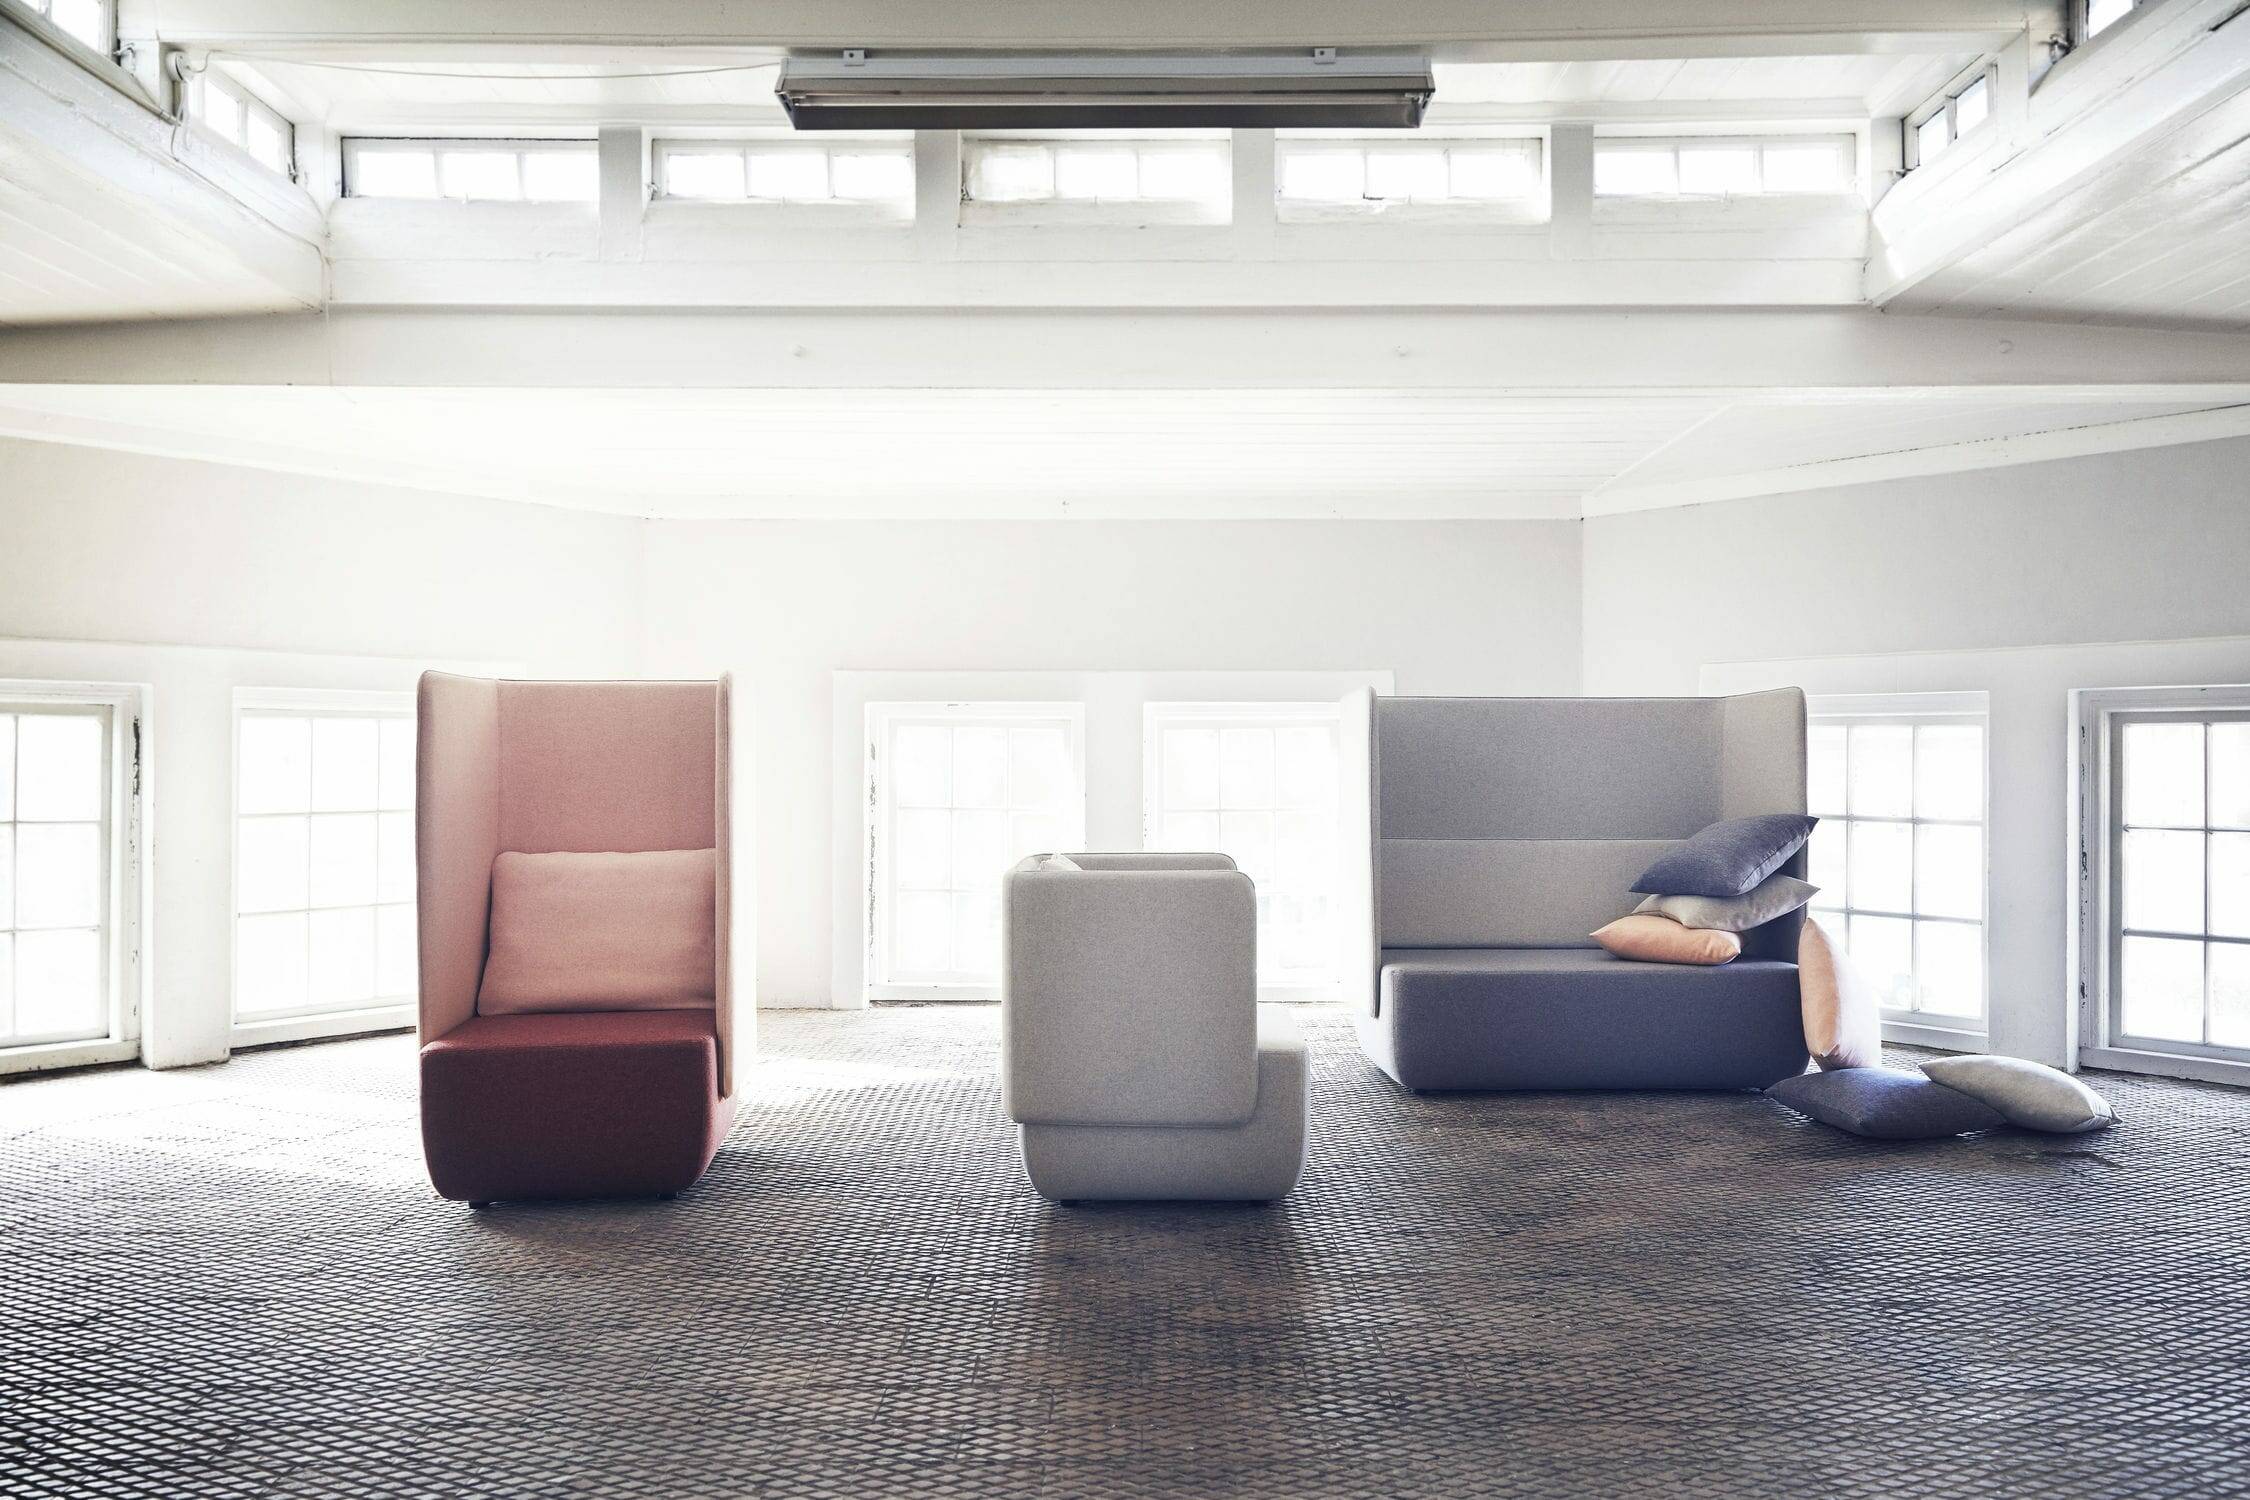 Поступление дизайнерской мягкой мебели во флагман Cosmorelax 